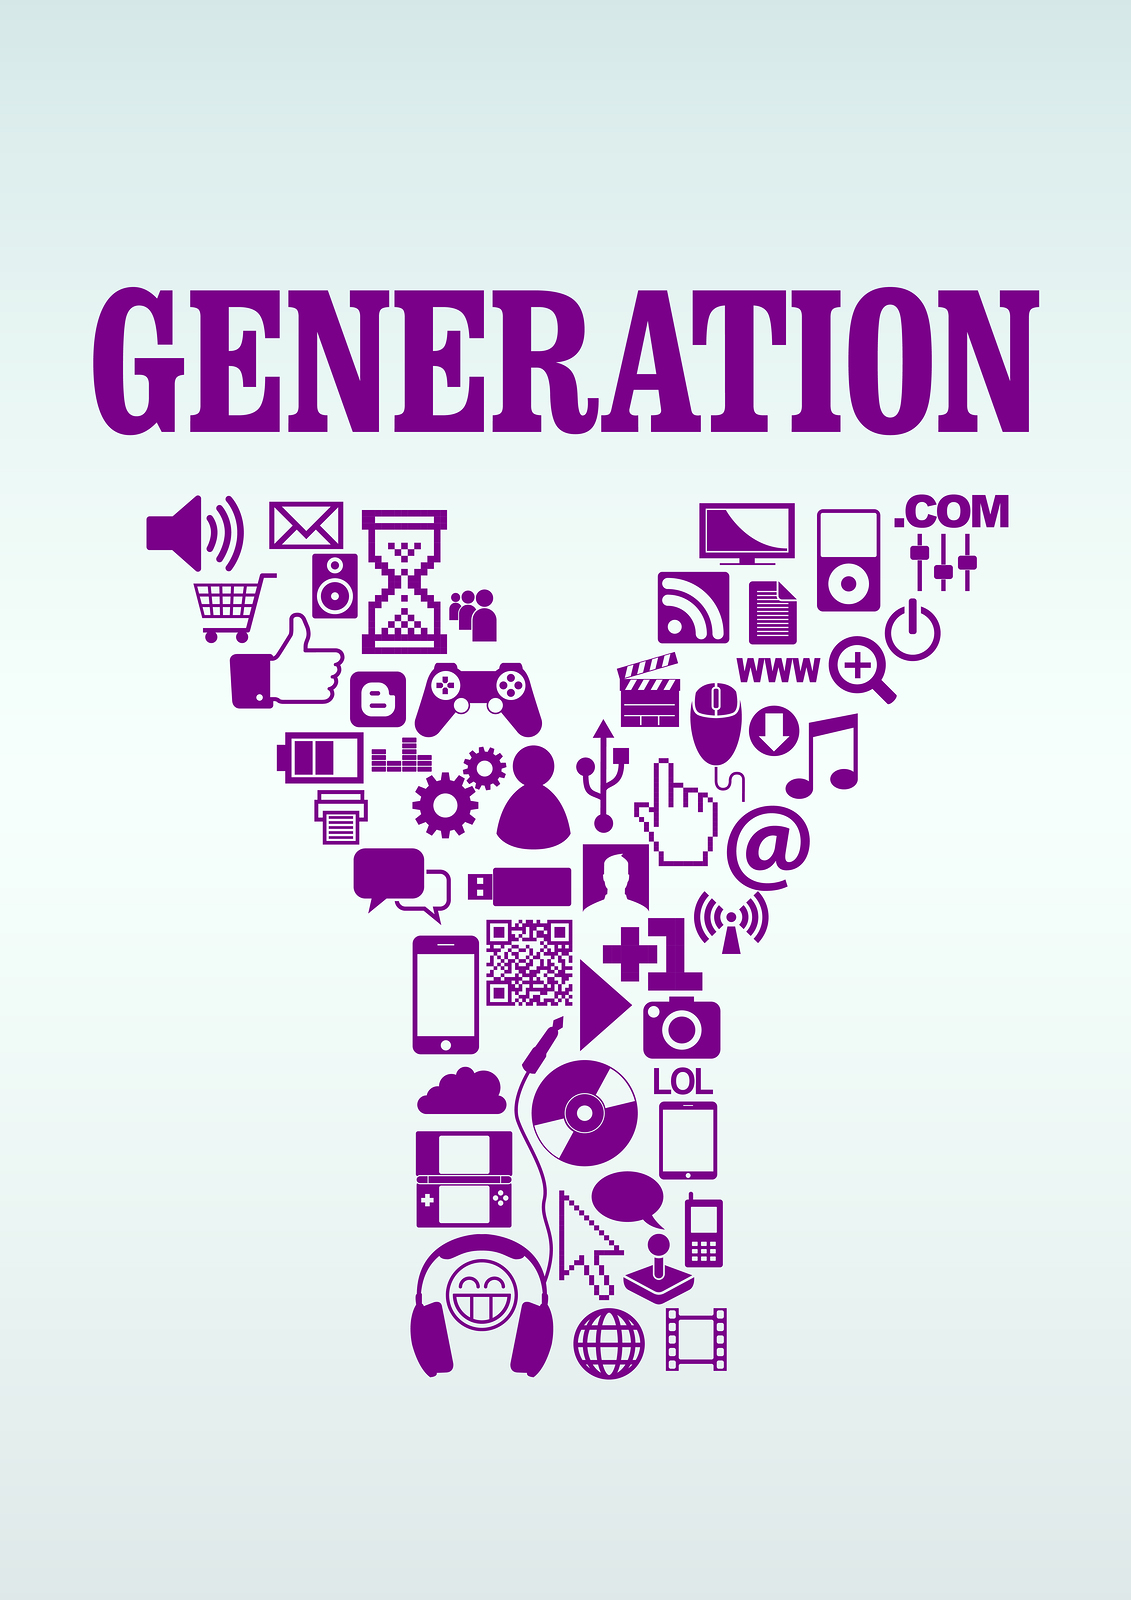 Geração Y nas redes sociais